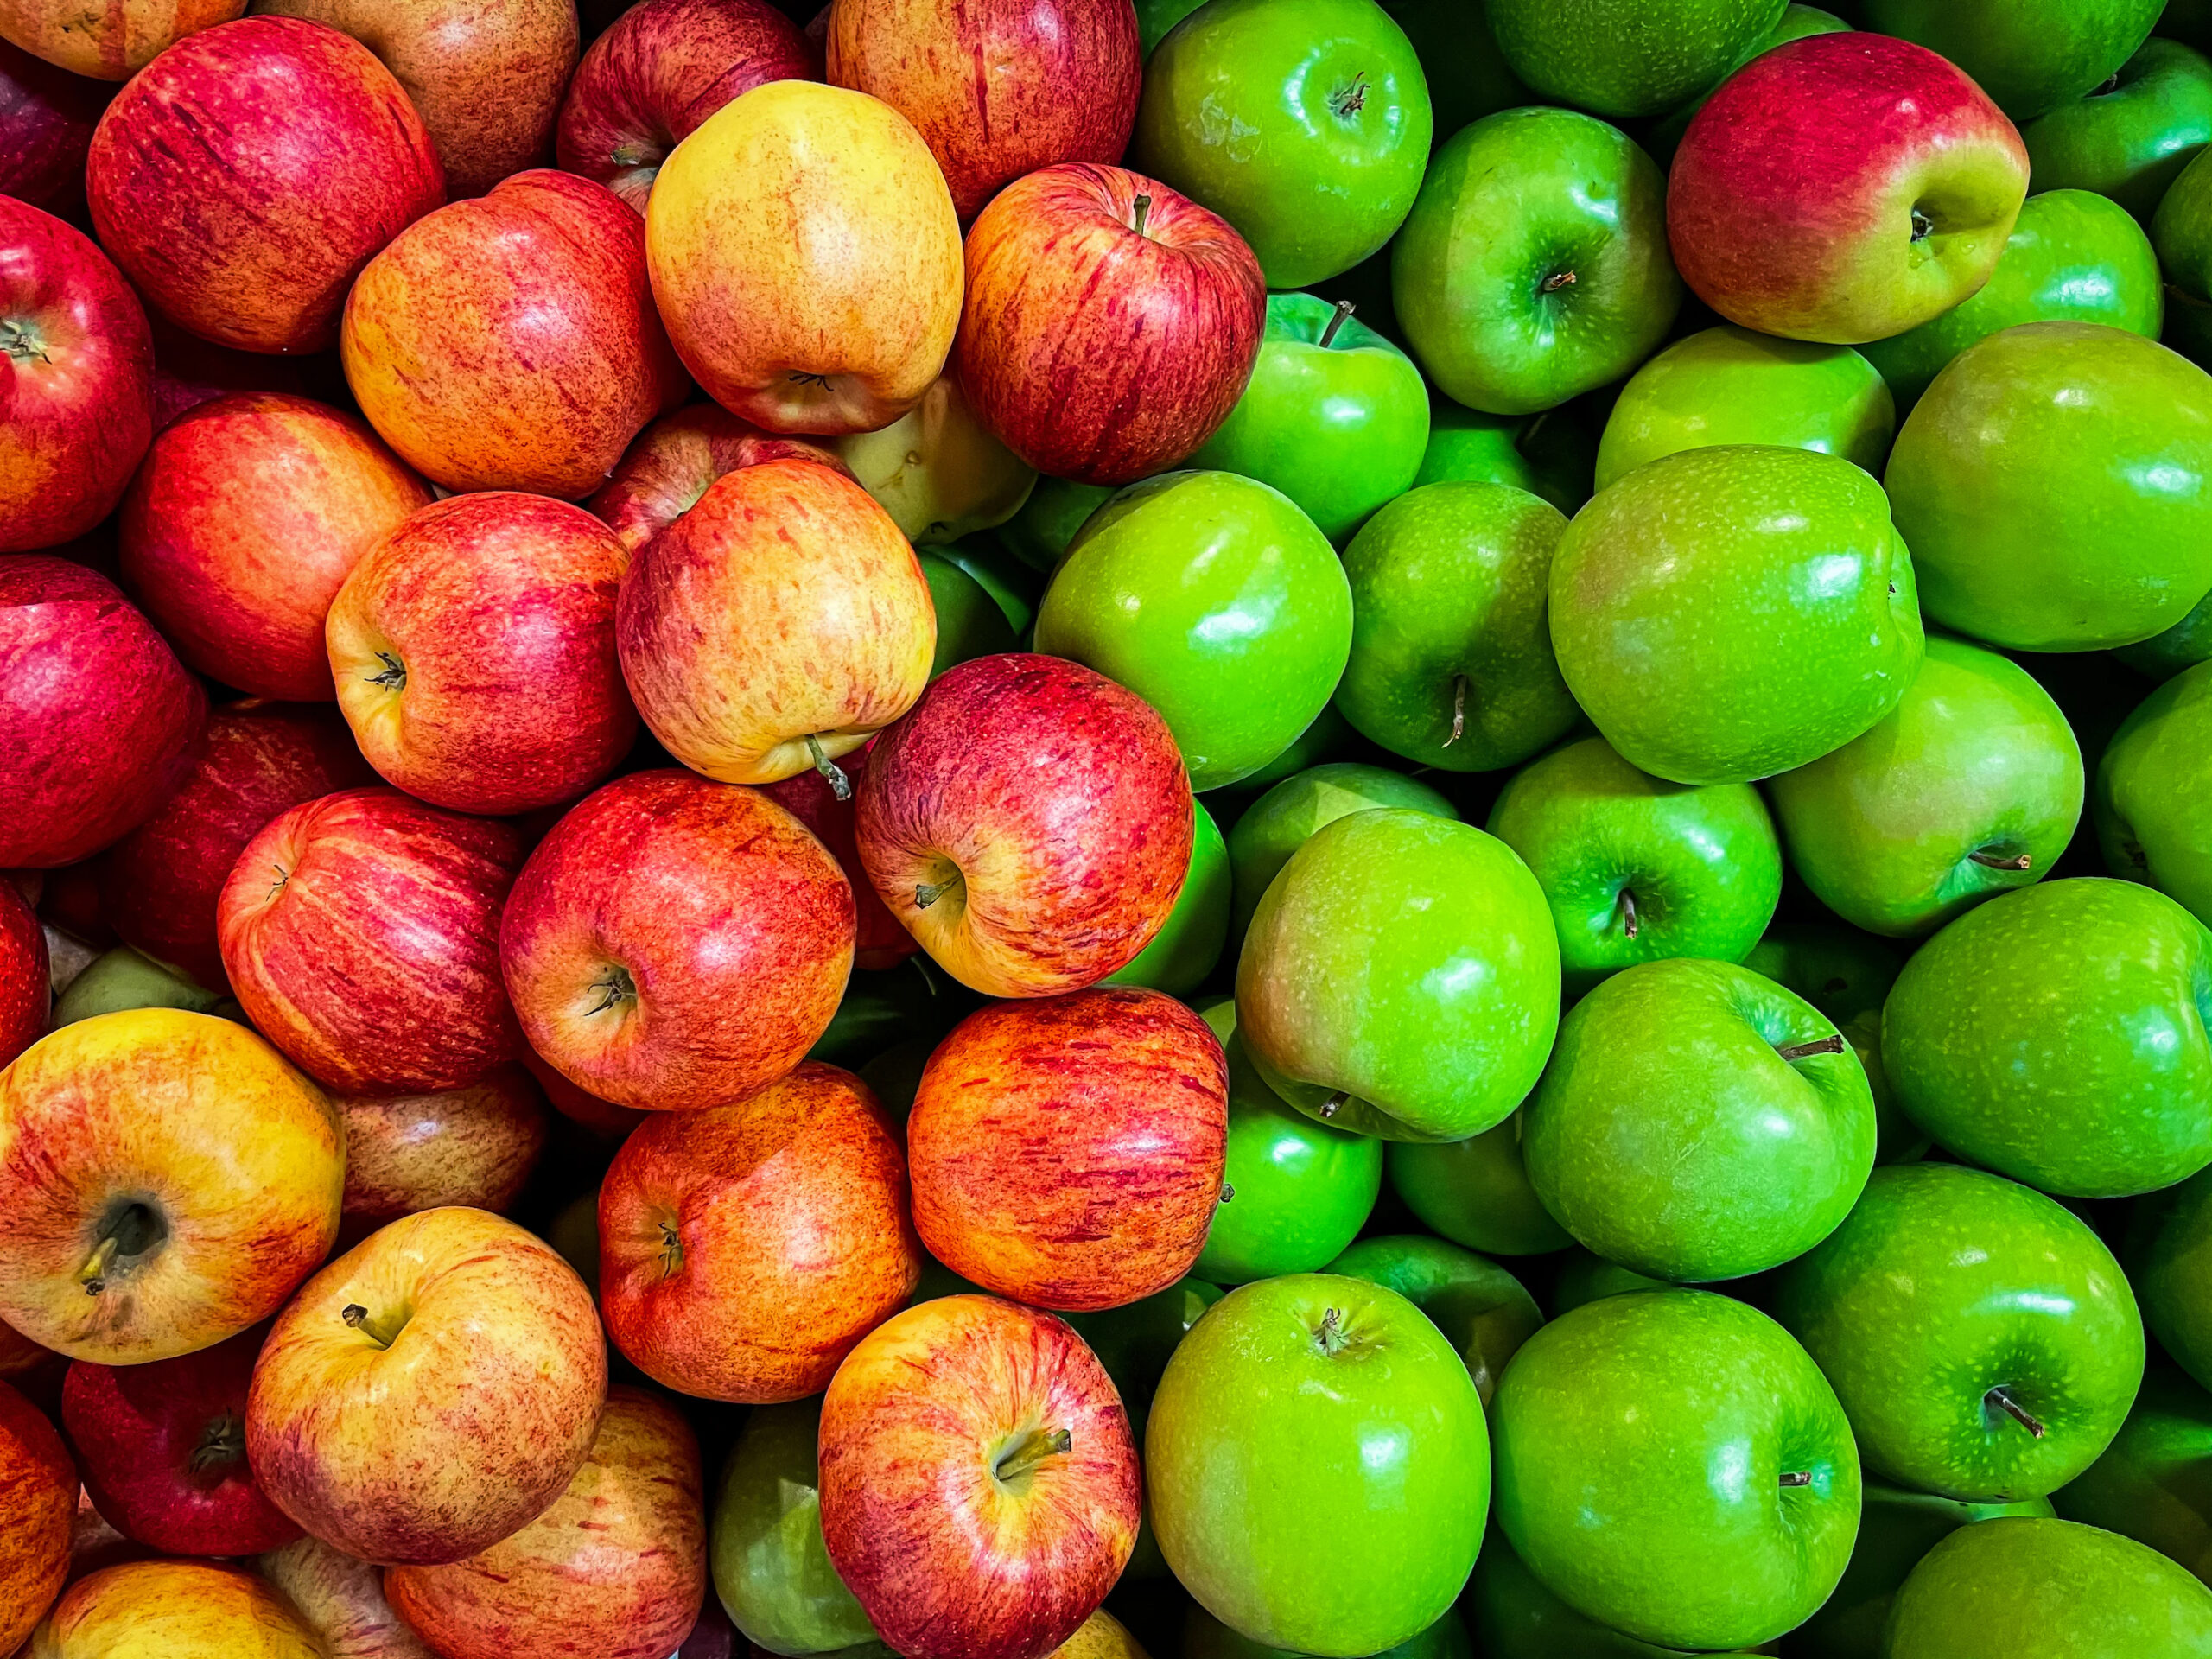 Blíži sa sezóna jabĺk - viete, ako ich správne skladovať?